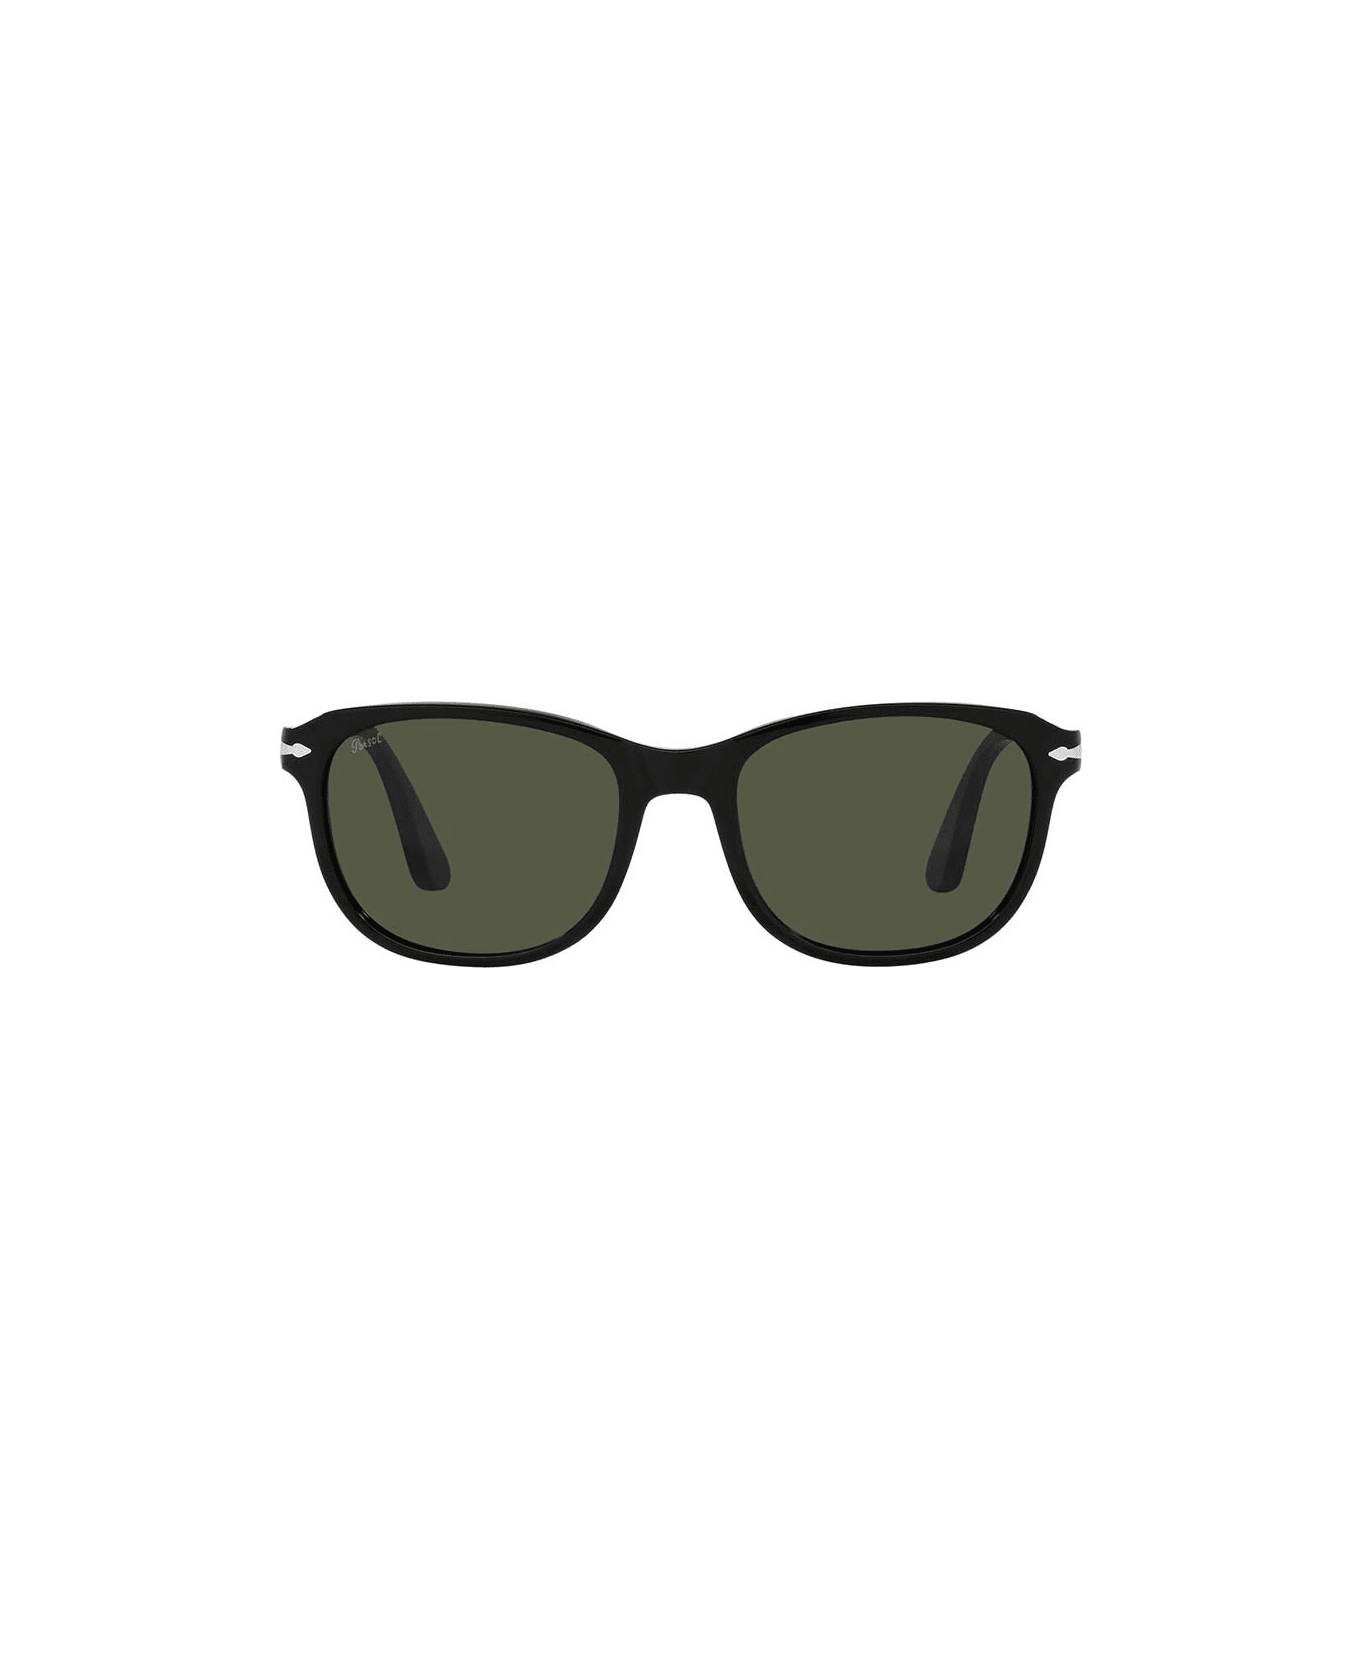 Persol Sunglasses - Nero/Nero